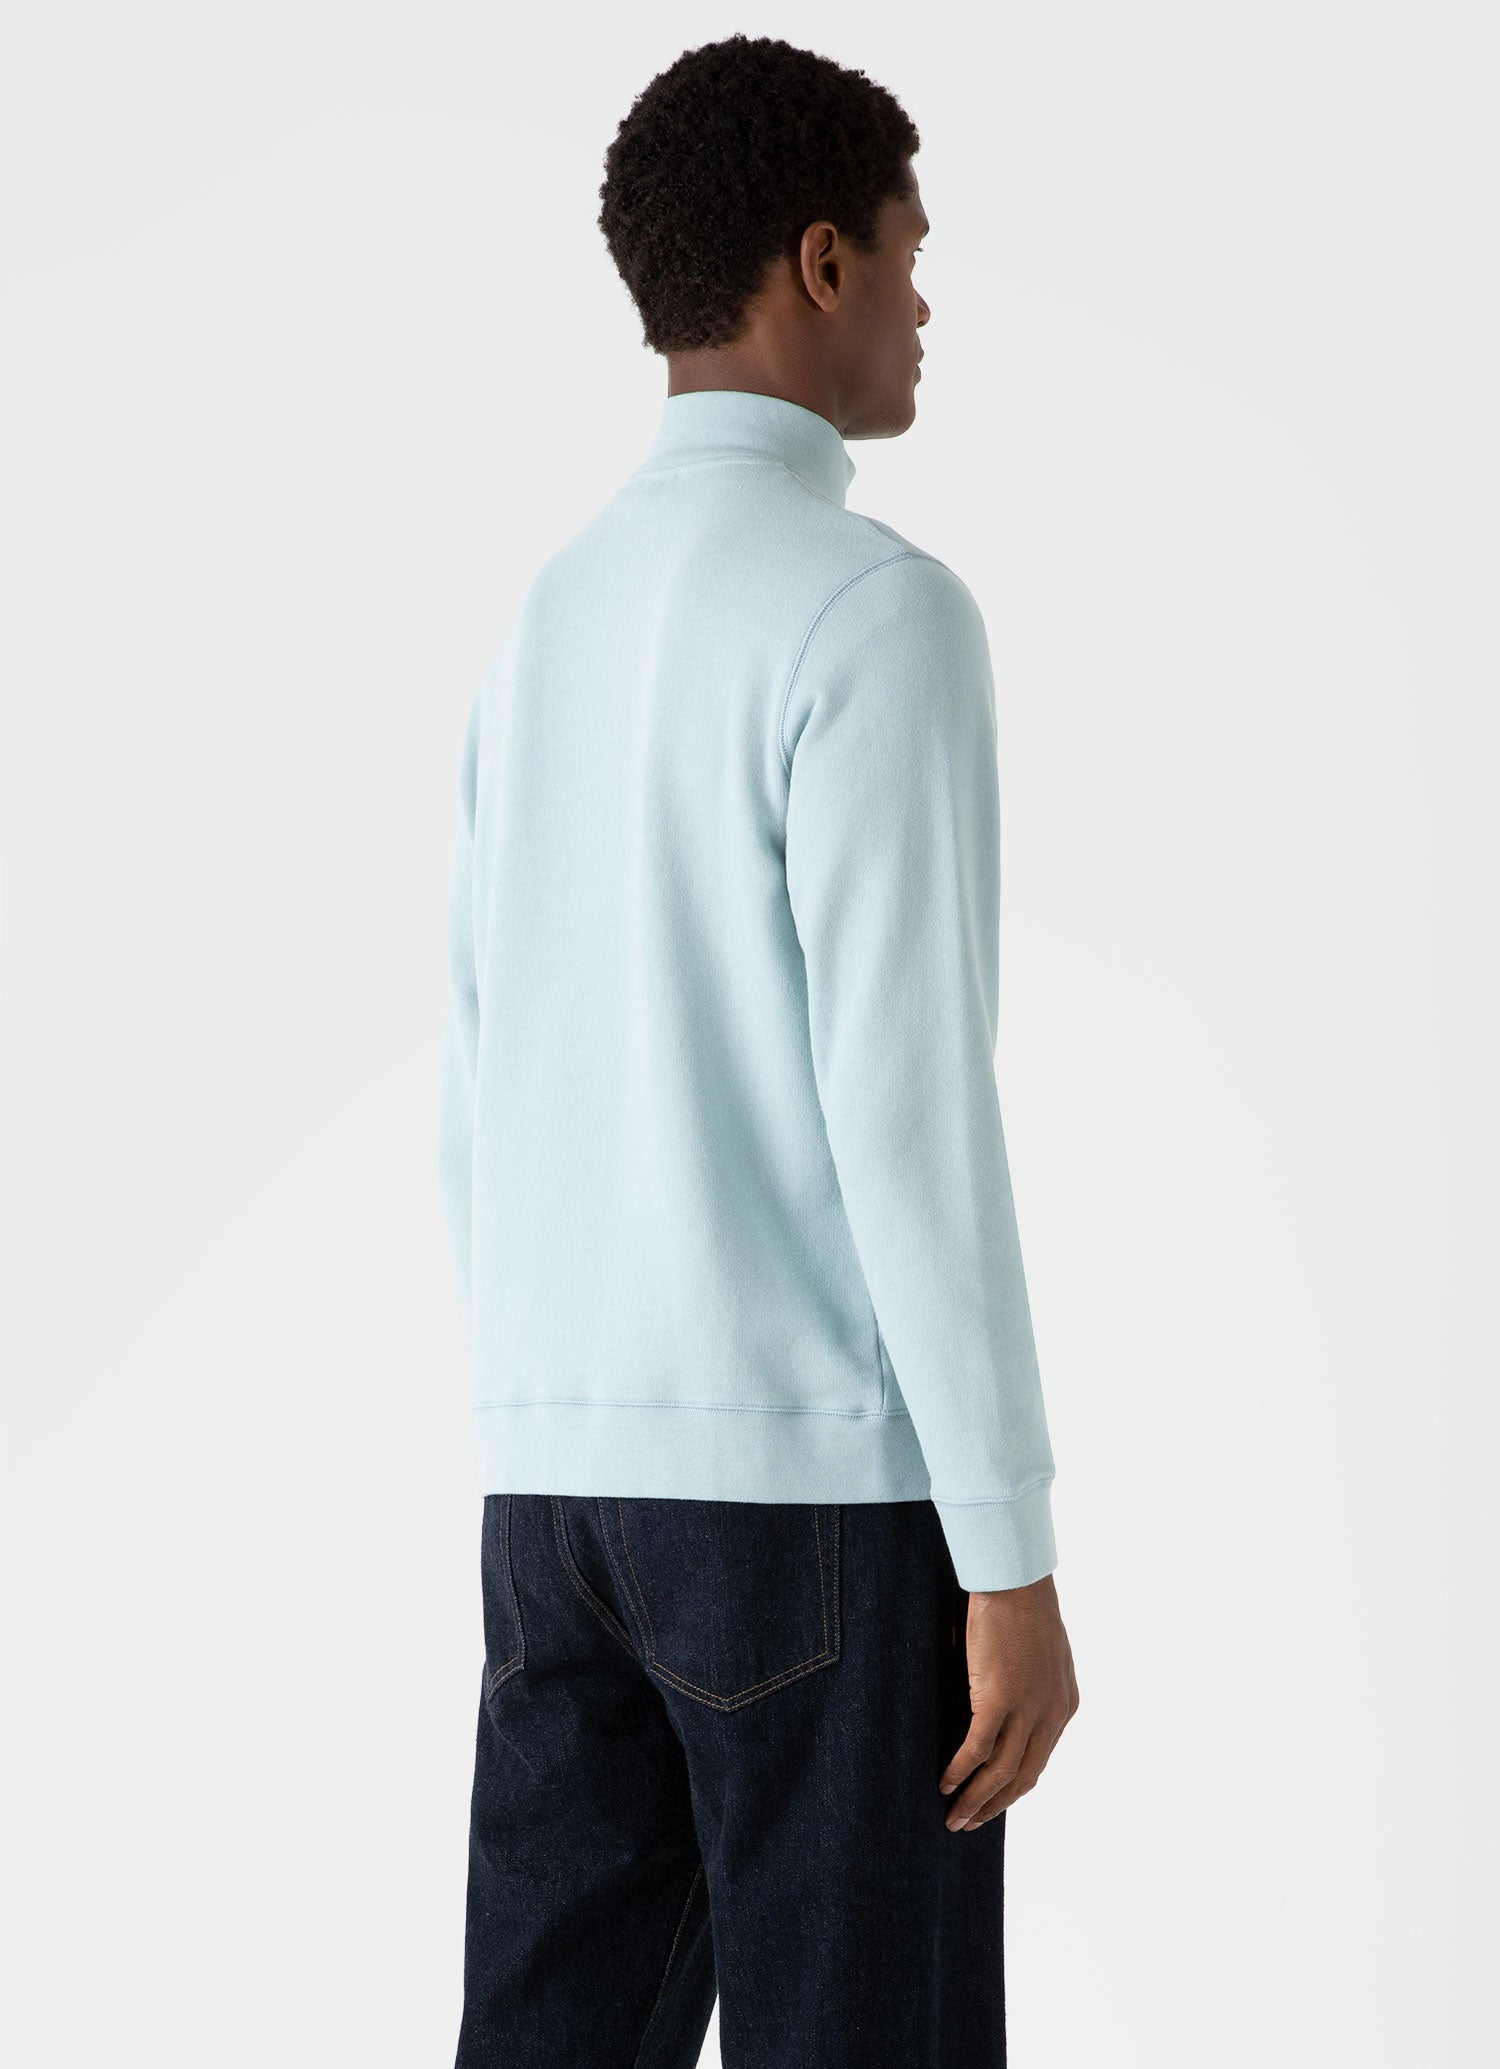 Men's Half Zip Loopback Sweatshirt in Blue Sage | Sunspel